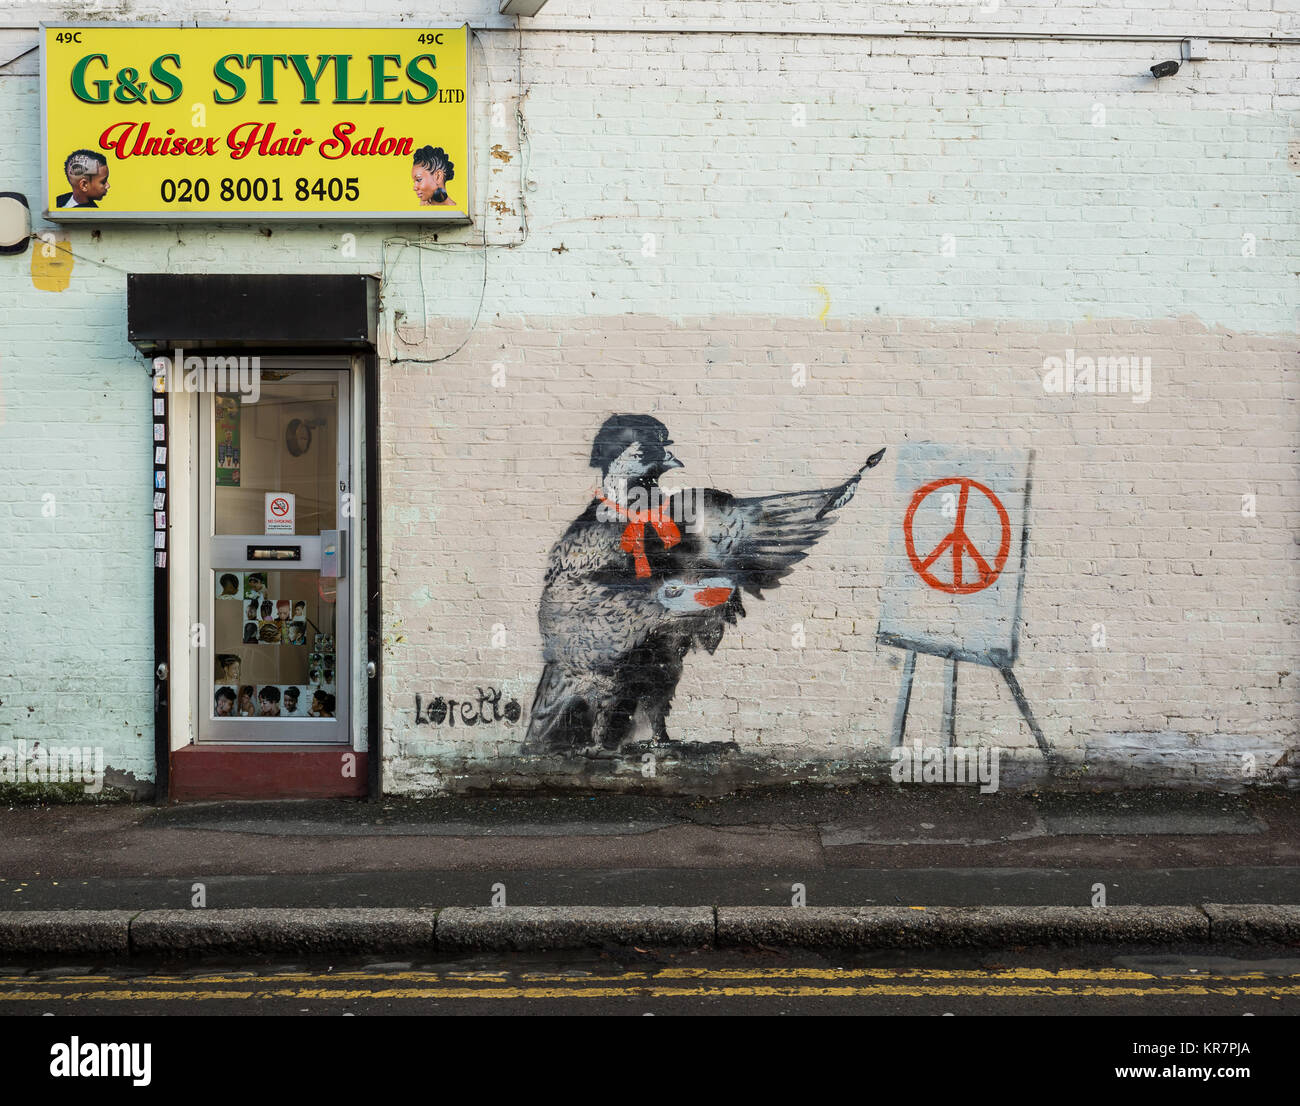 Peinture artiste Pigeon CND / Interdire le symbole bombe dans le nord-est de Londres. Artwork par Loretto a Londres, l'artiste graffiti urbain. Banque D'Images